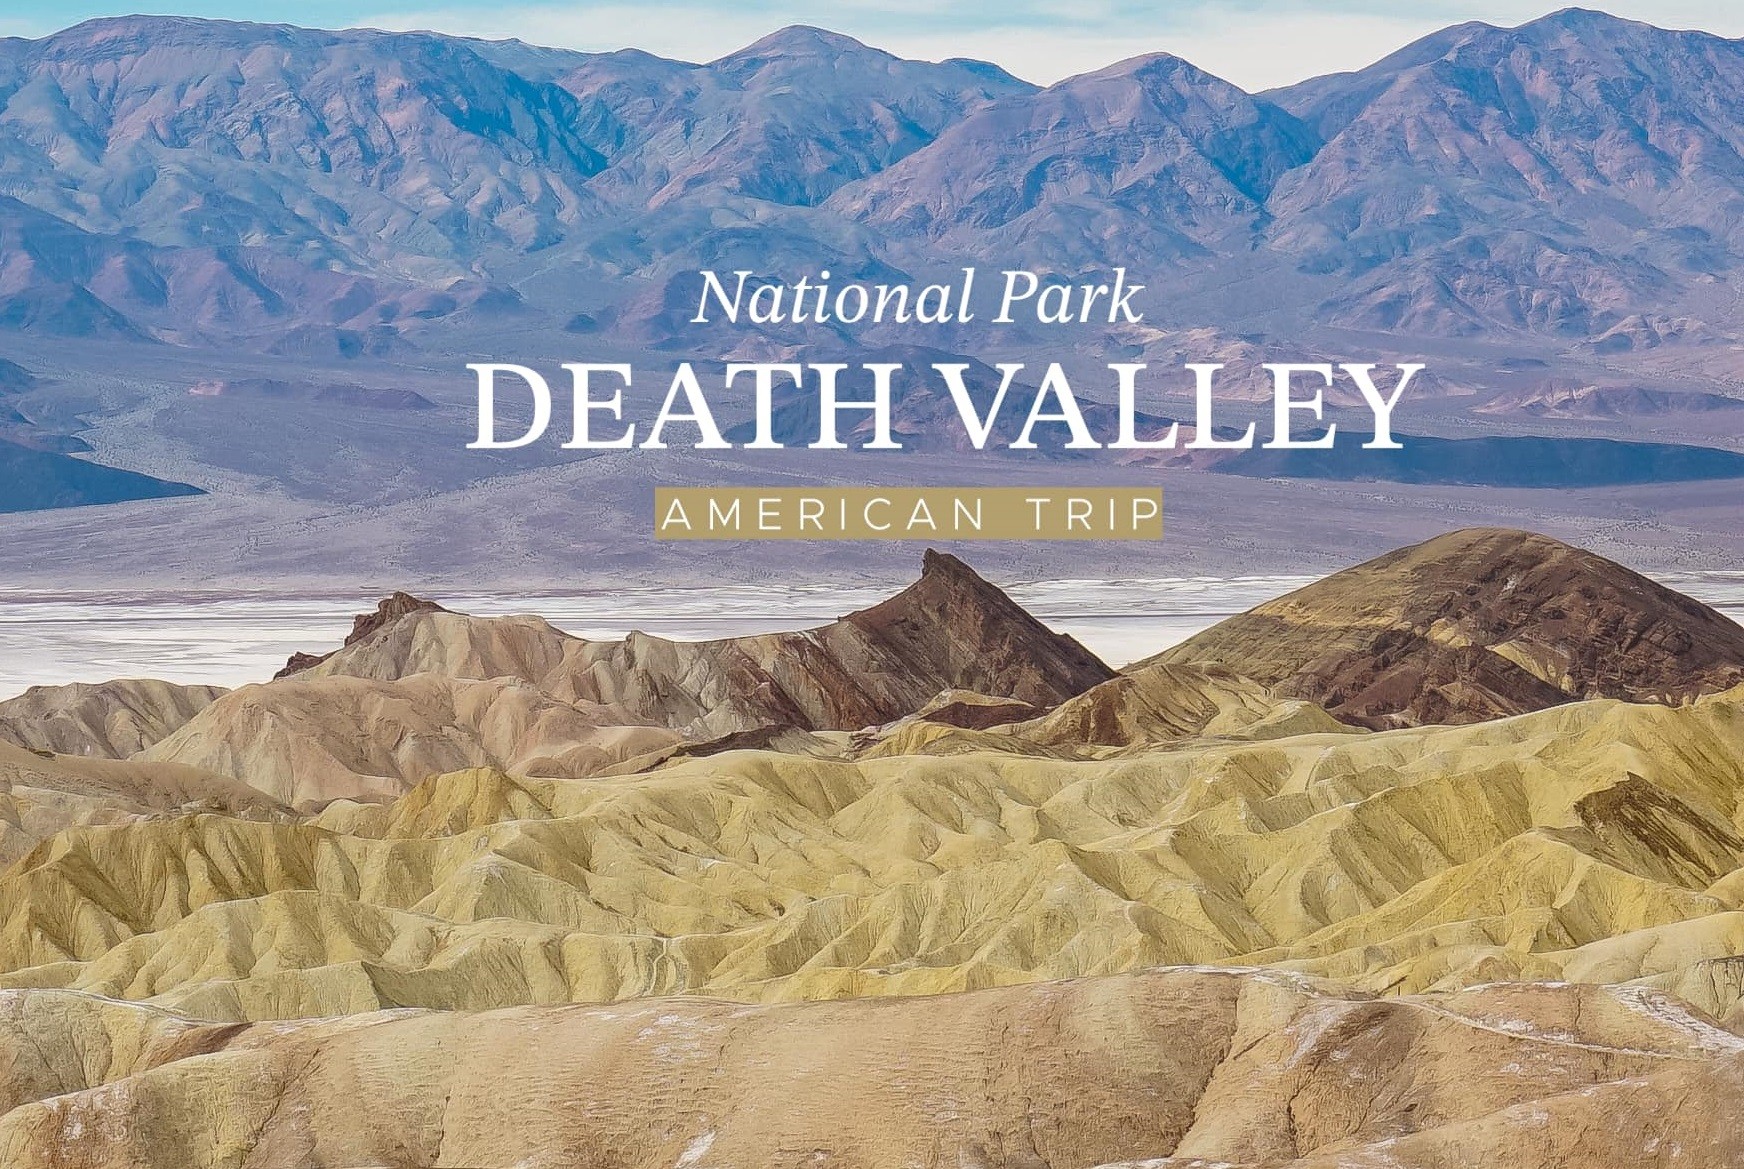 Khám phá Thung lũng Chết Death Valley - Một trong những nơi khô hạn nhất hành tinh